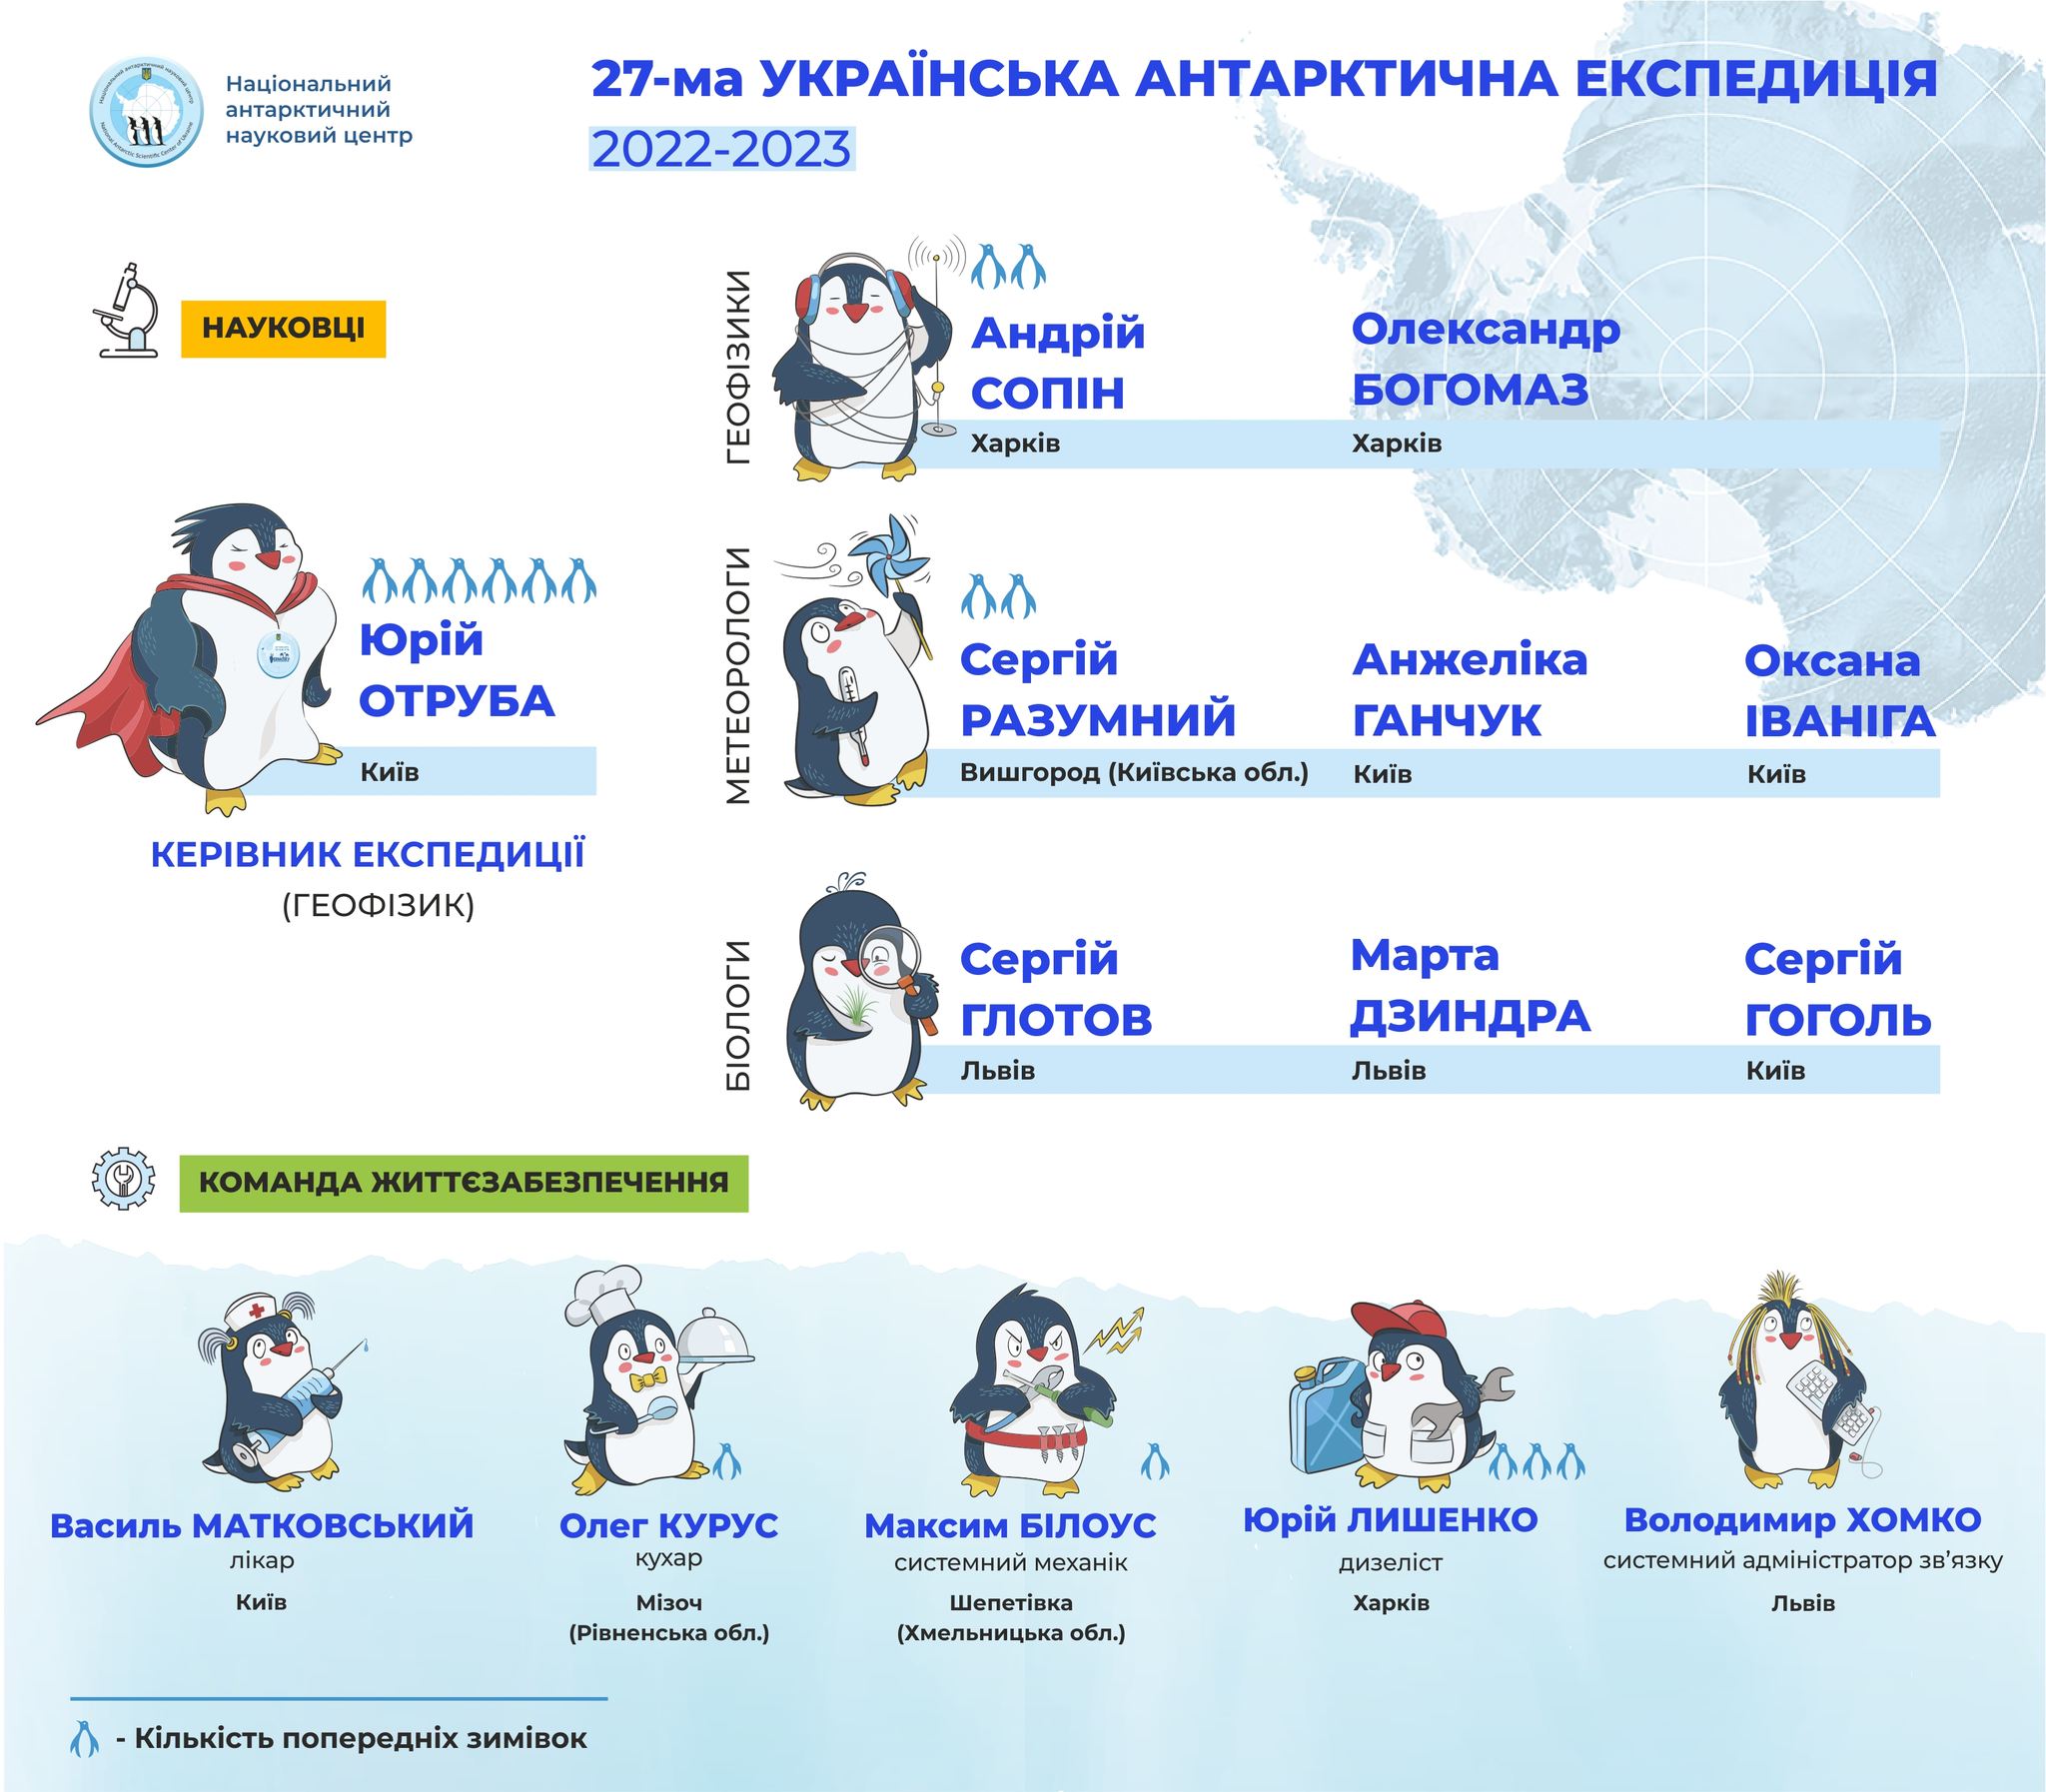 Україна підготувала команду науковців для експедиції на Антарктиду: чому збільшили кількість жінок (ФОТО) - фото 3